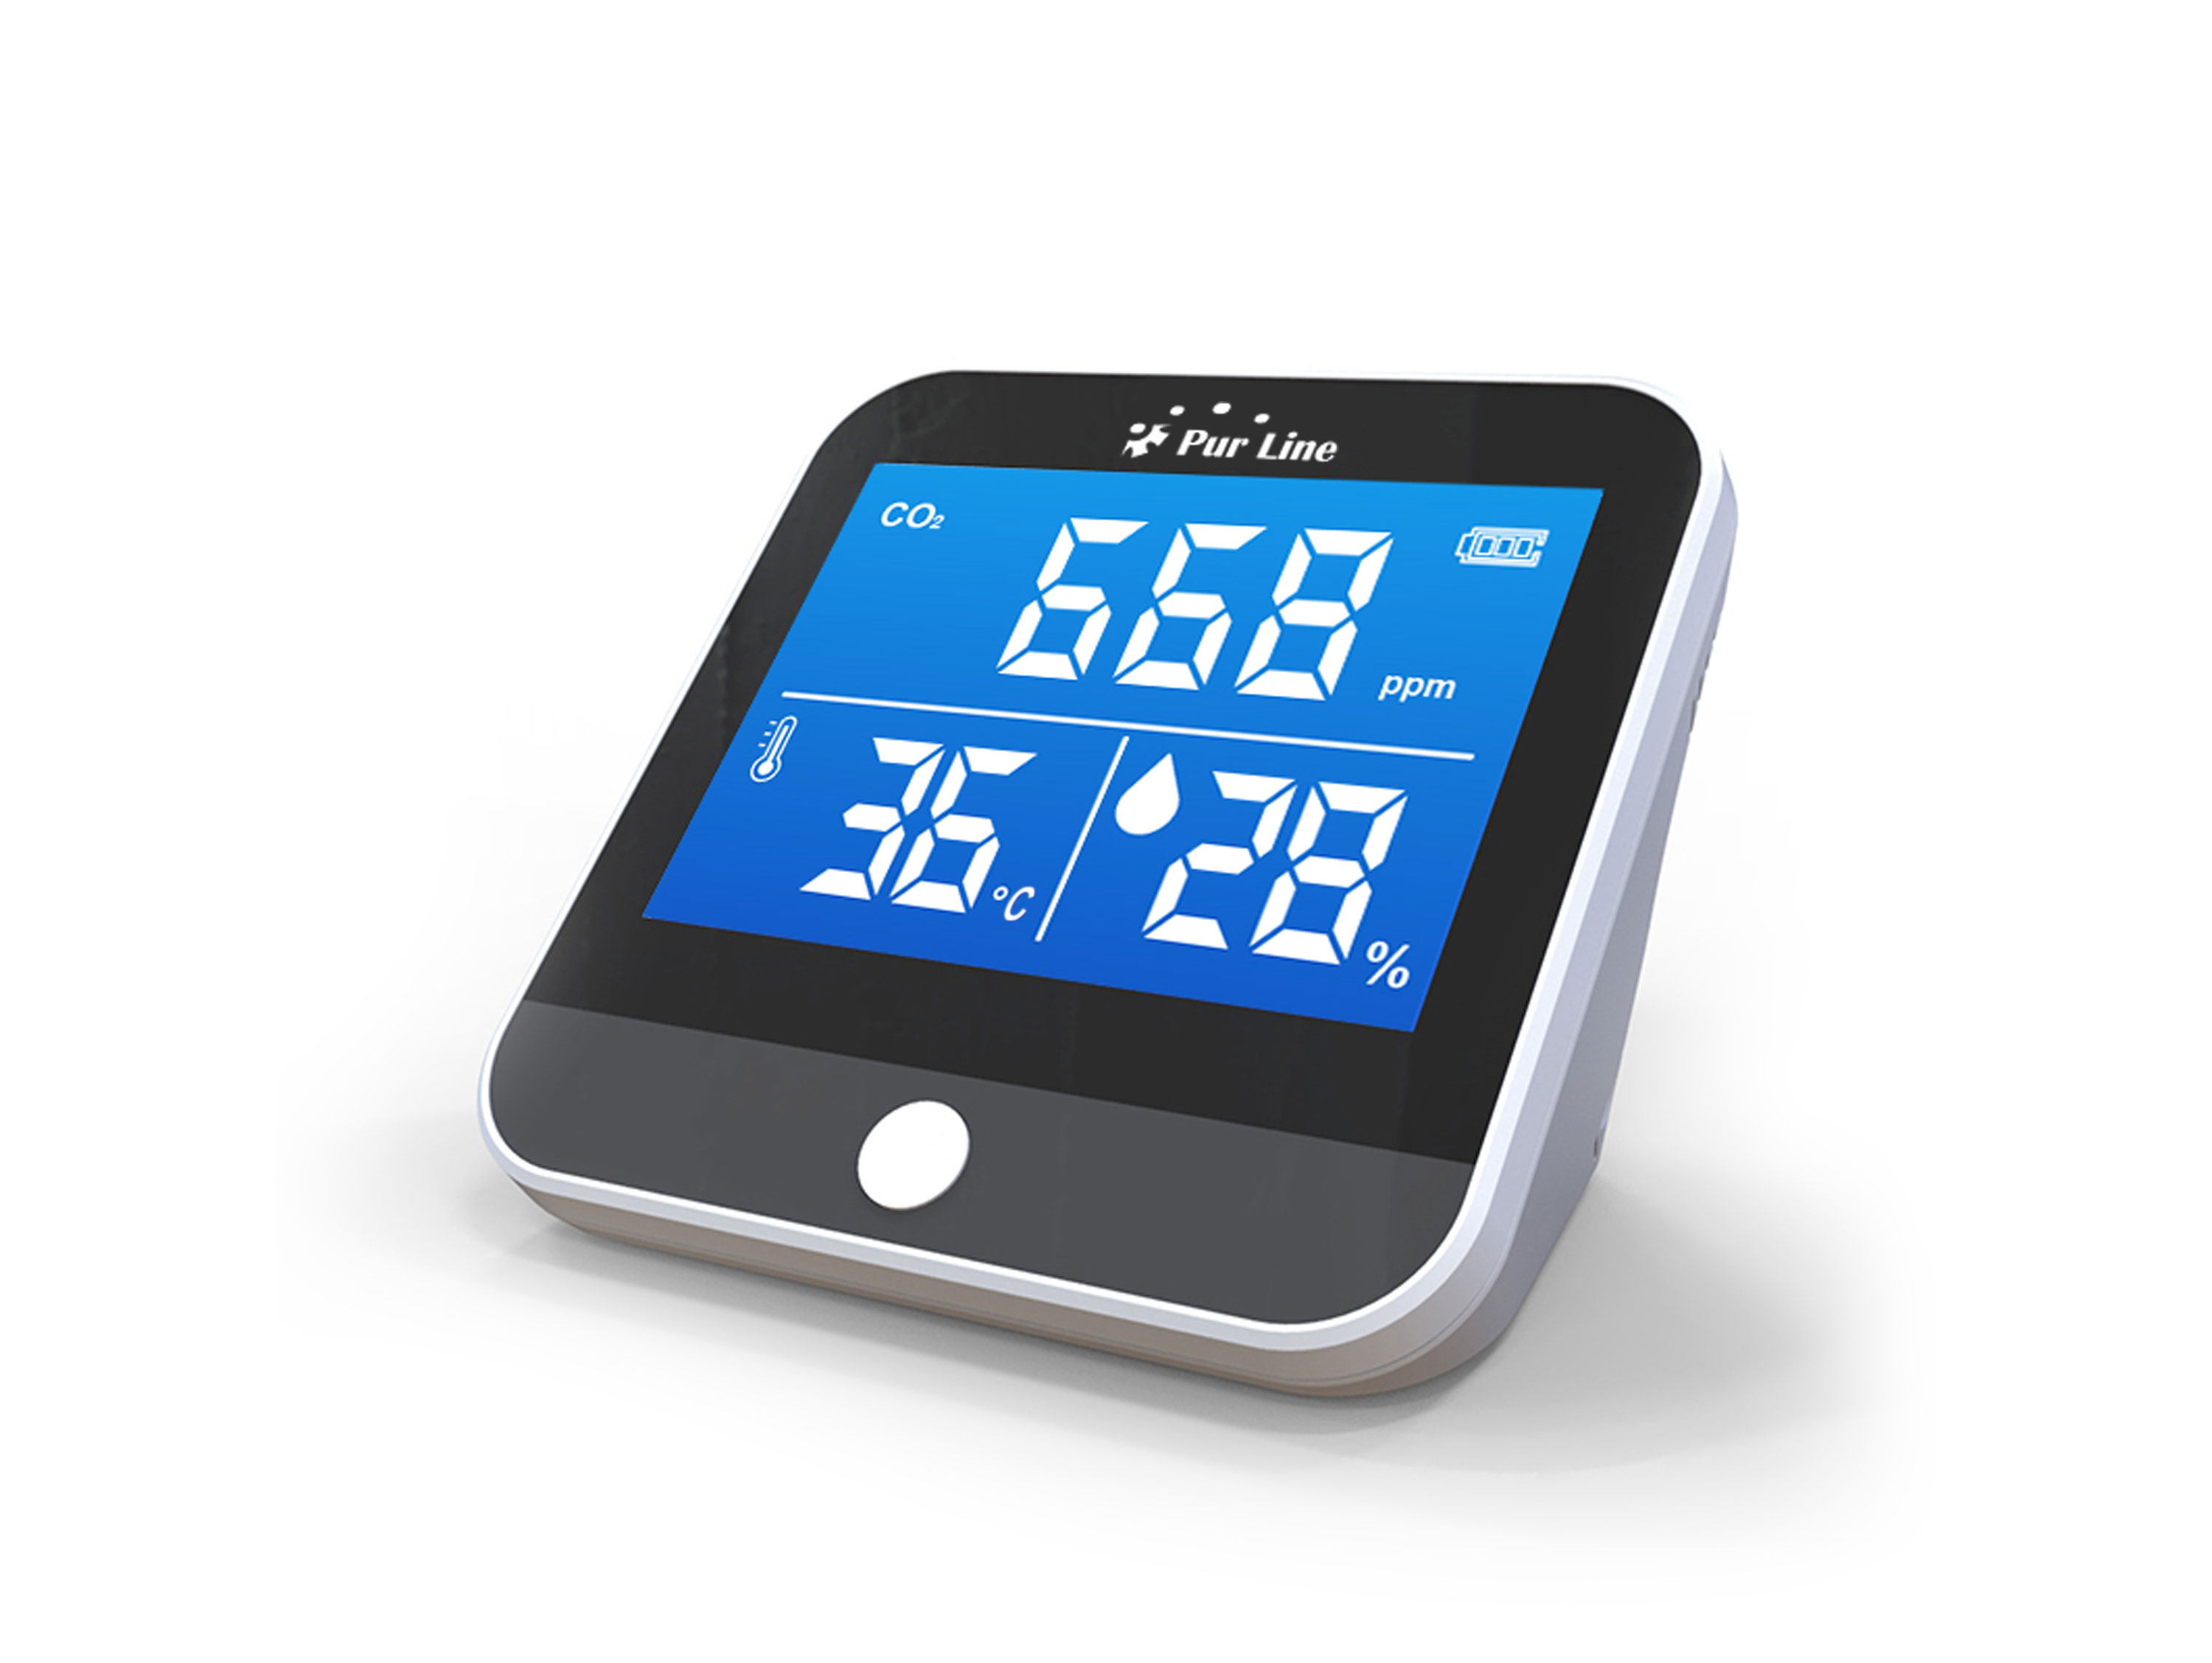 PURLINE Drahtlose Feuchtigkeitsmesser mit CO2-, Wetterstation und Temperatur- PM2-Sensor, Wetterstation